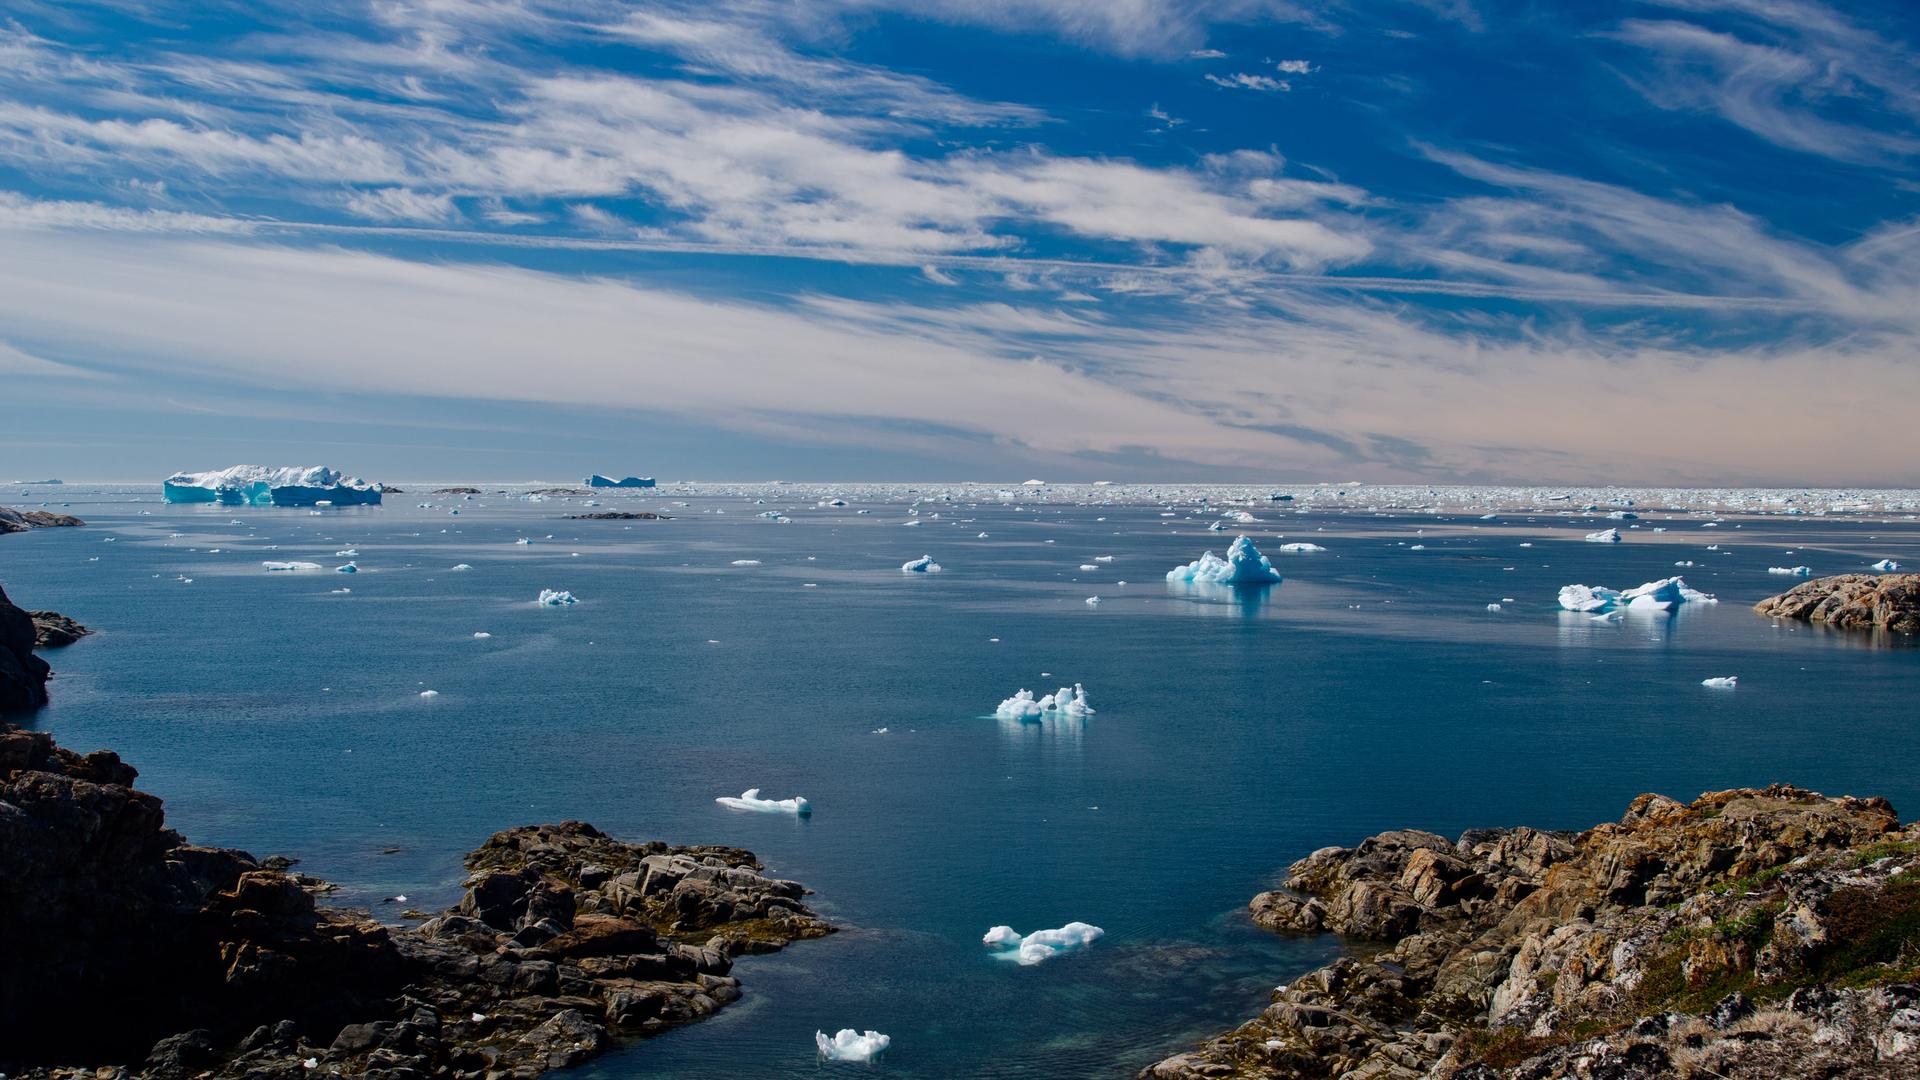 Landschaft in Ostgrönland: Blick von einer Felsenküste auf das Meer, auf dem noch einige Eisschollen schwimmen